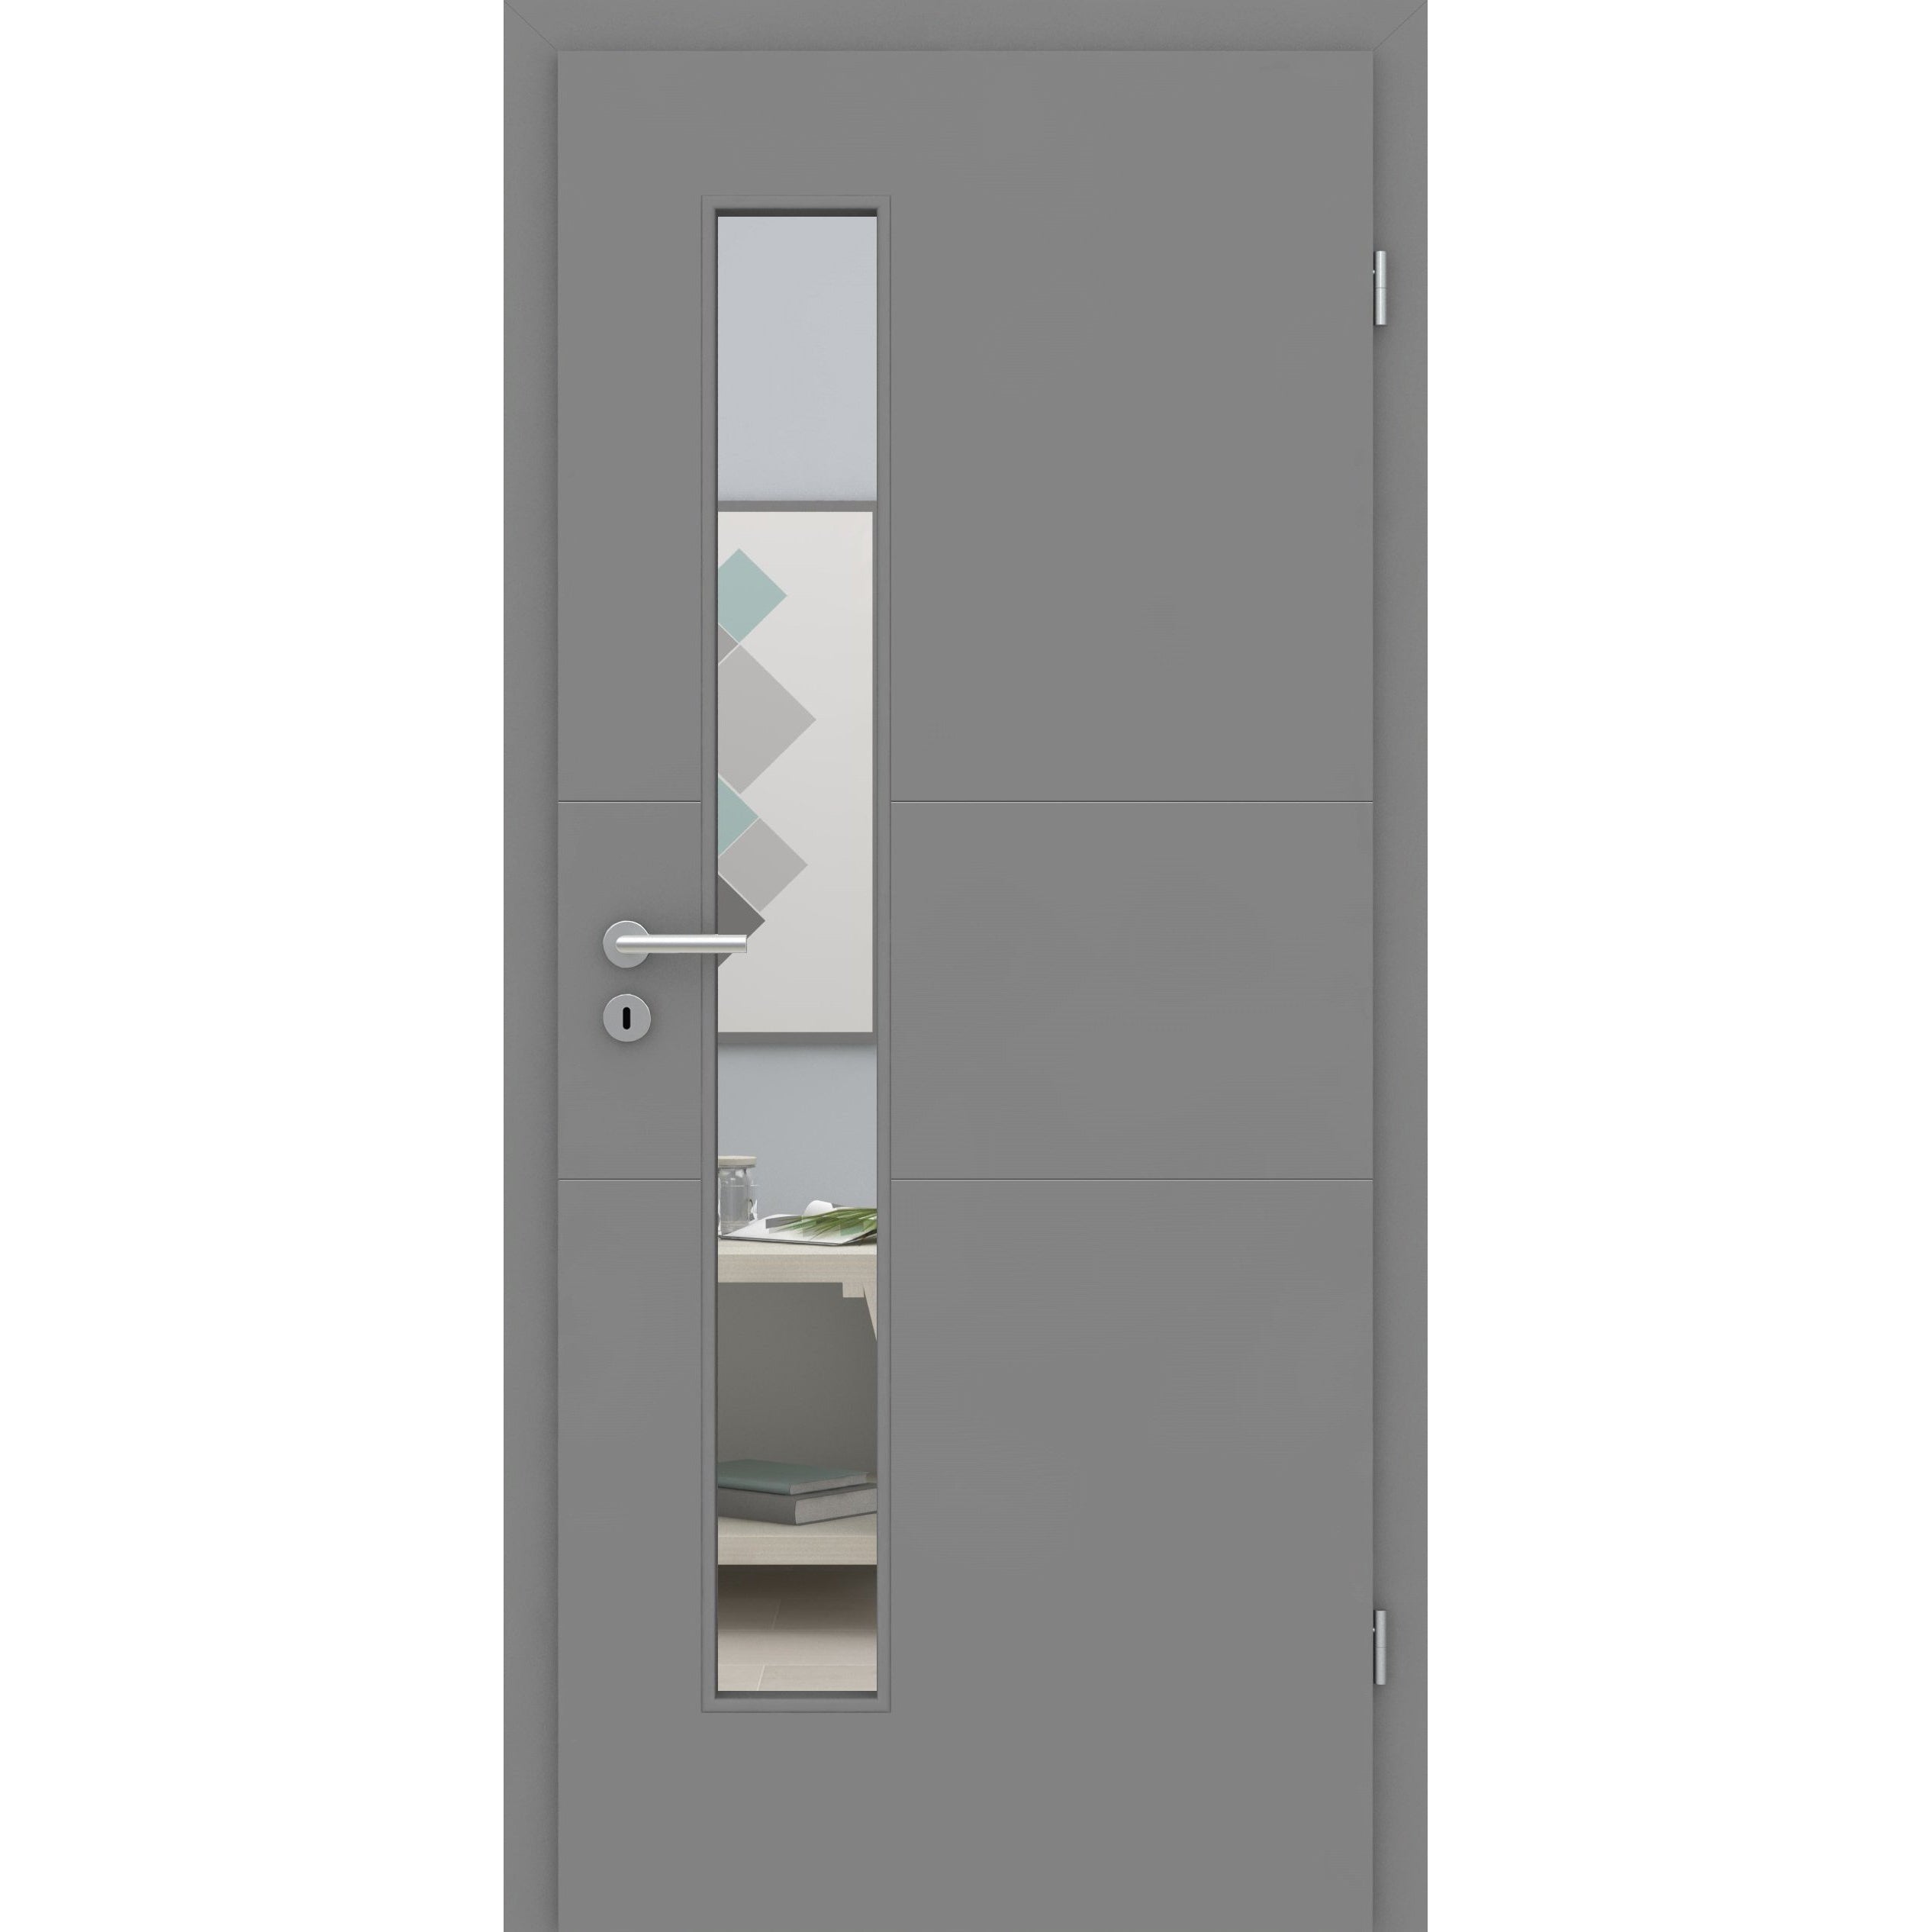 Zimmertür mit Zarge und Lichtausschnitt grau 2 Rillen quer Designkante - Modell Designtür Q27LAS